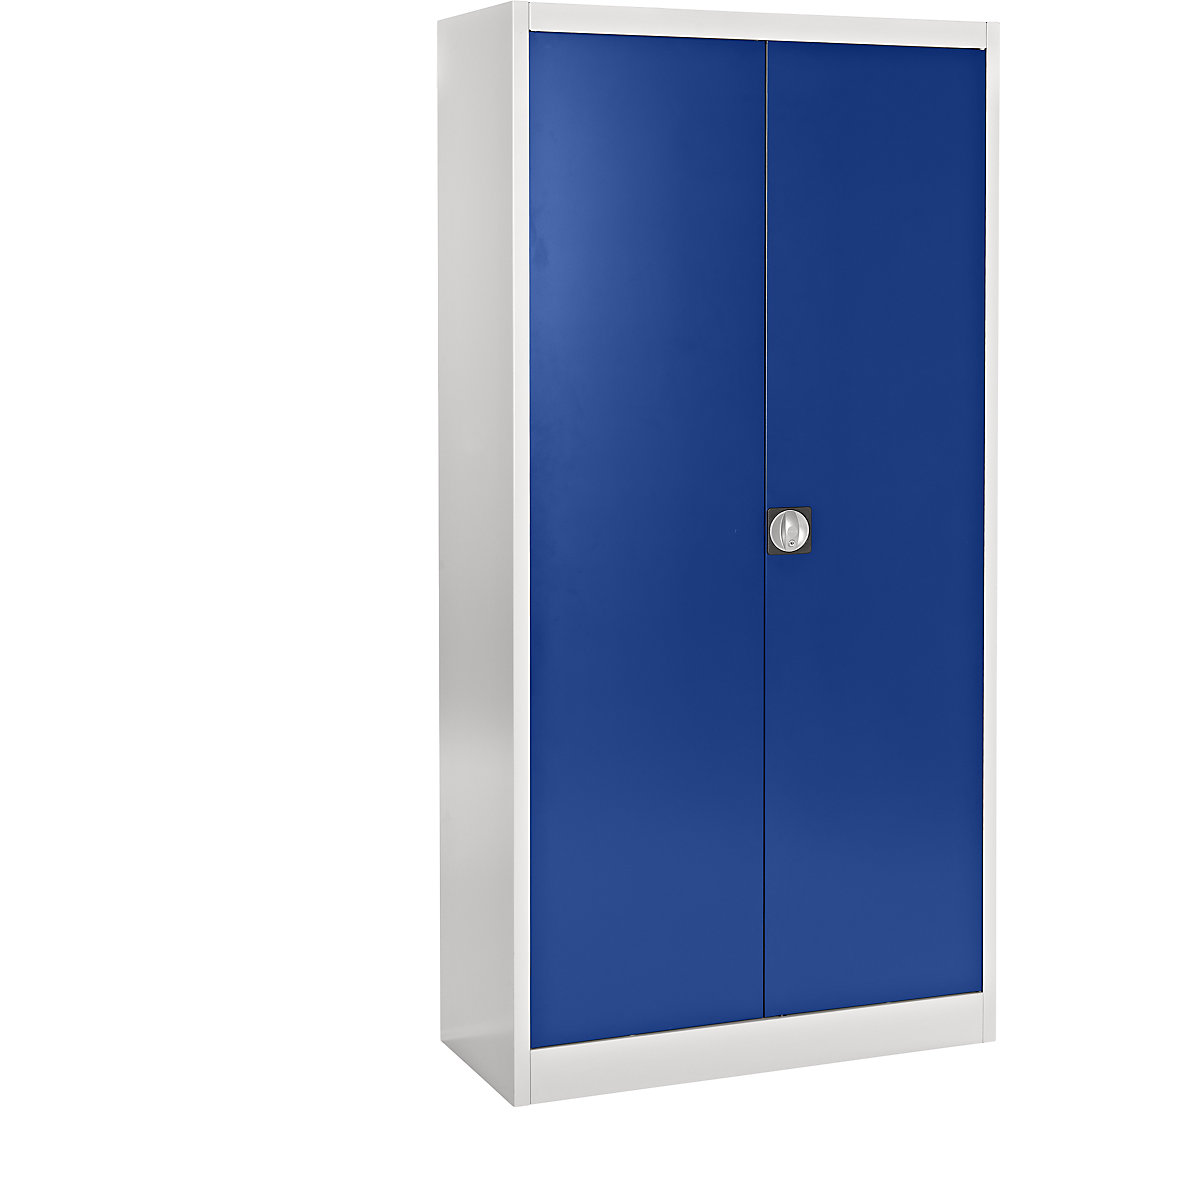 Beforduló ajtós acélszekrény – mauser, 4 polc, mélység 420 mm, világosszürke / ultramarin kék-9